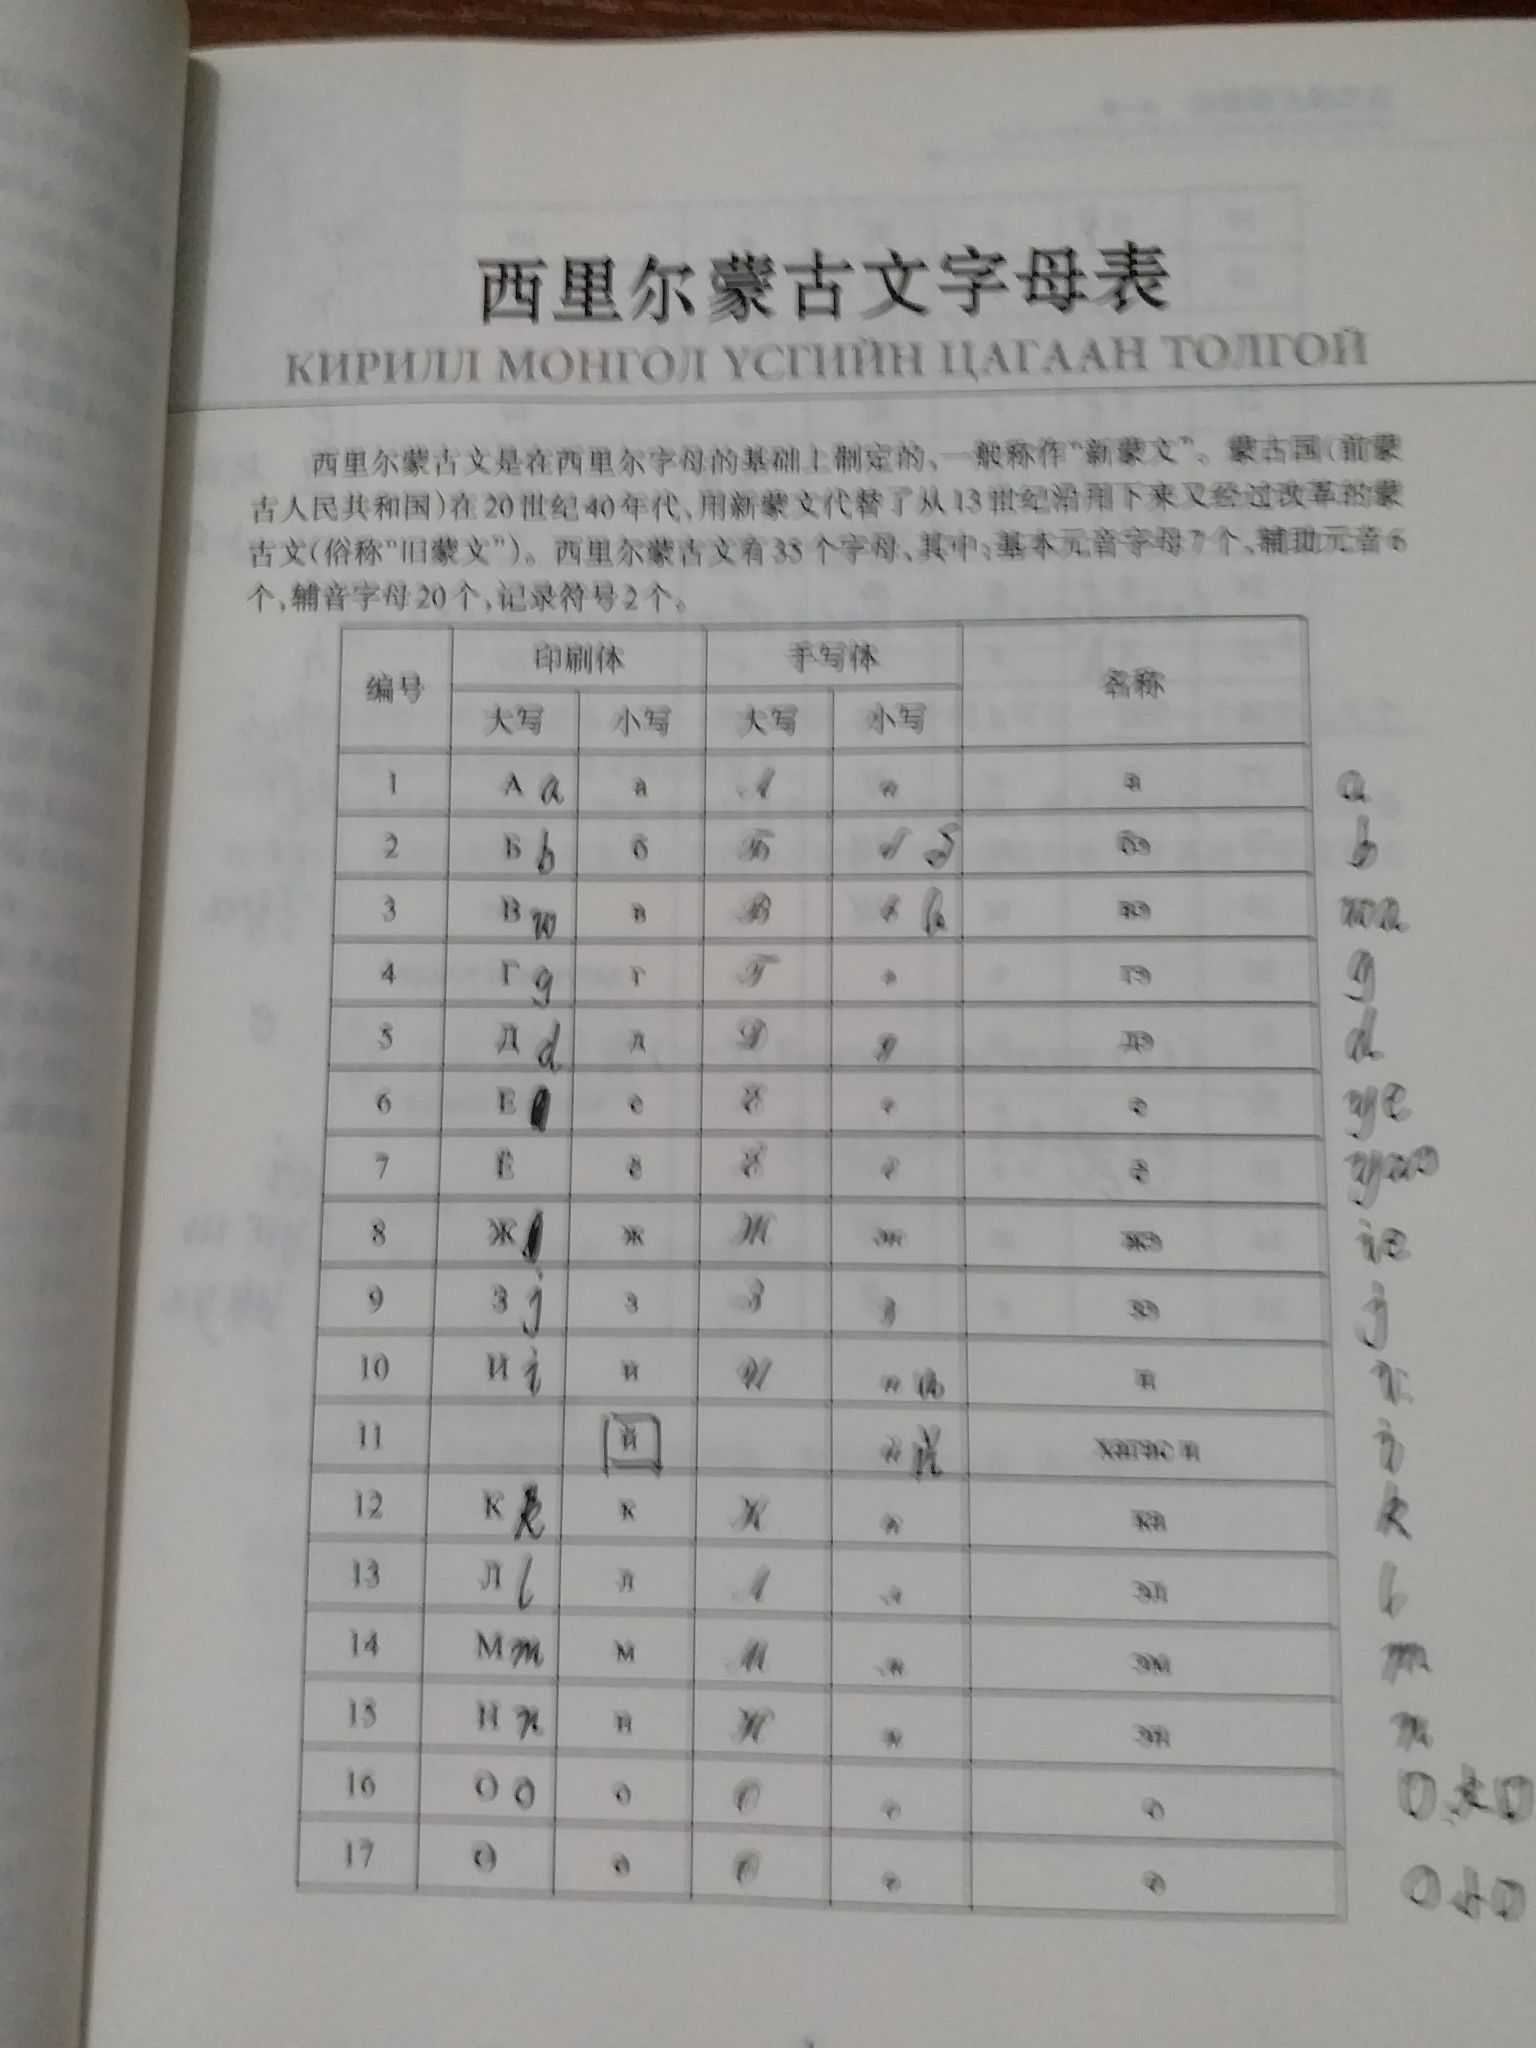 现有的蒙古文字母体系包括了胡都木字母,托忒字